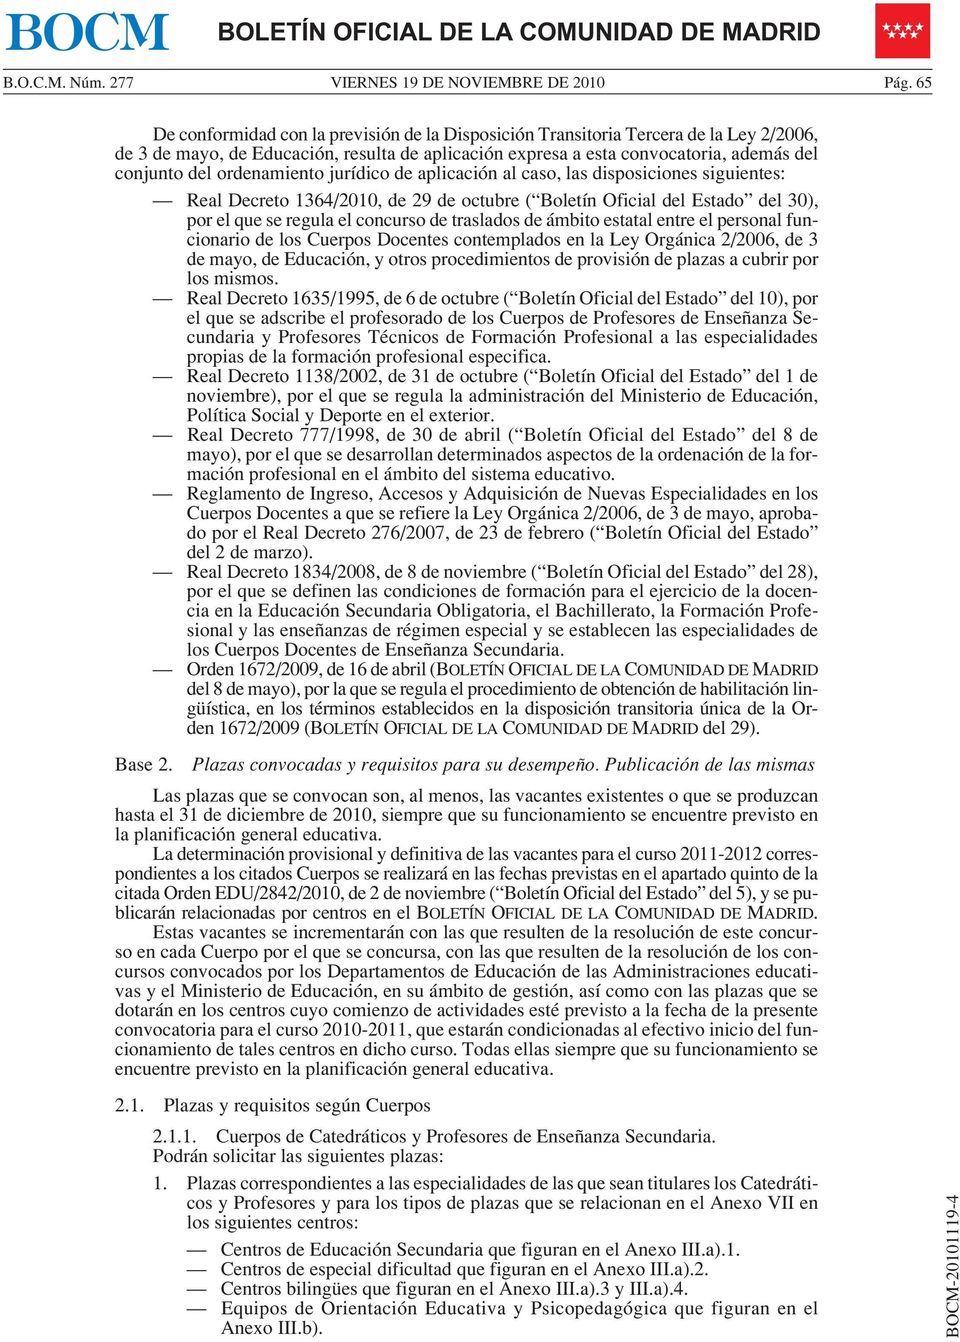 ordenamiento jurídico de aplicación al caso, las disposiciones siguientes: Real Decreto 1364/2010, de 29 de octubre ( Boletín Oficial del Estado del 30), por el que se regula el concurso de traslados